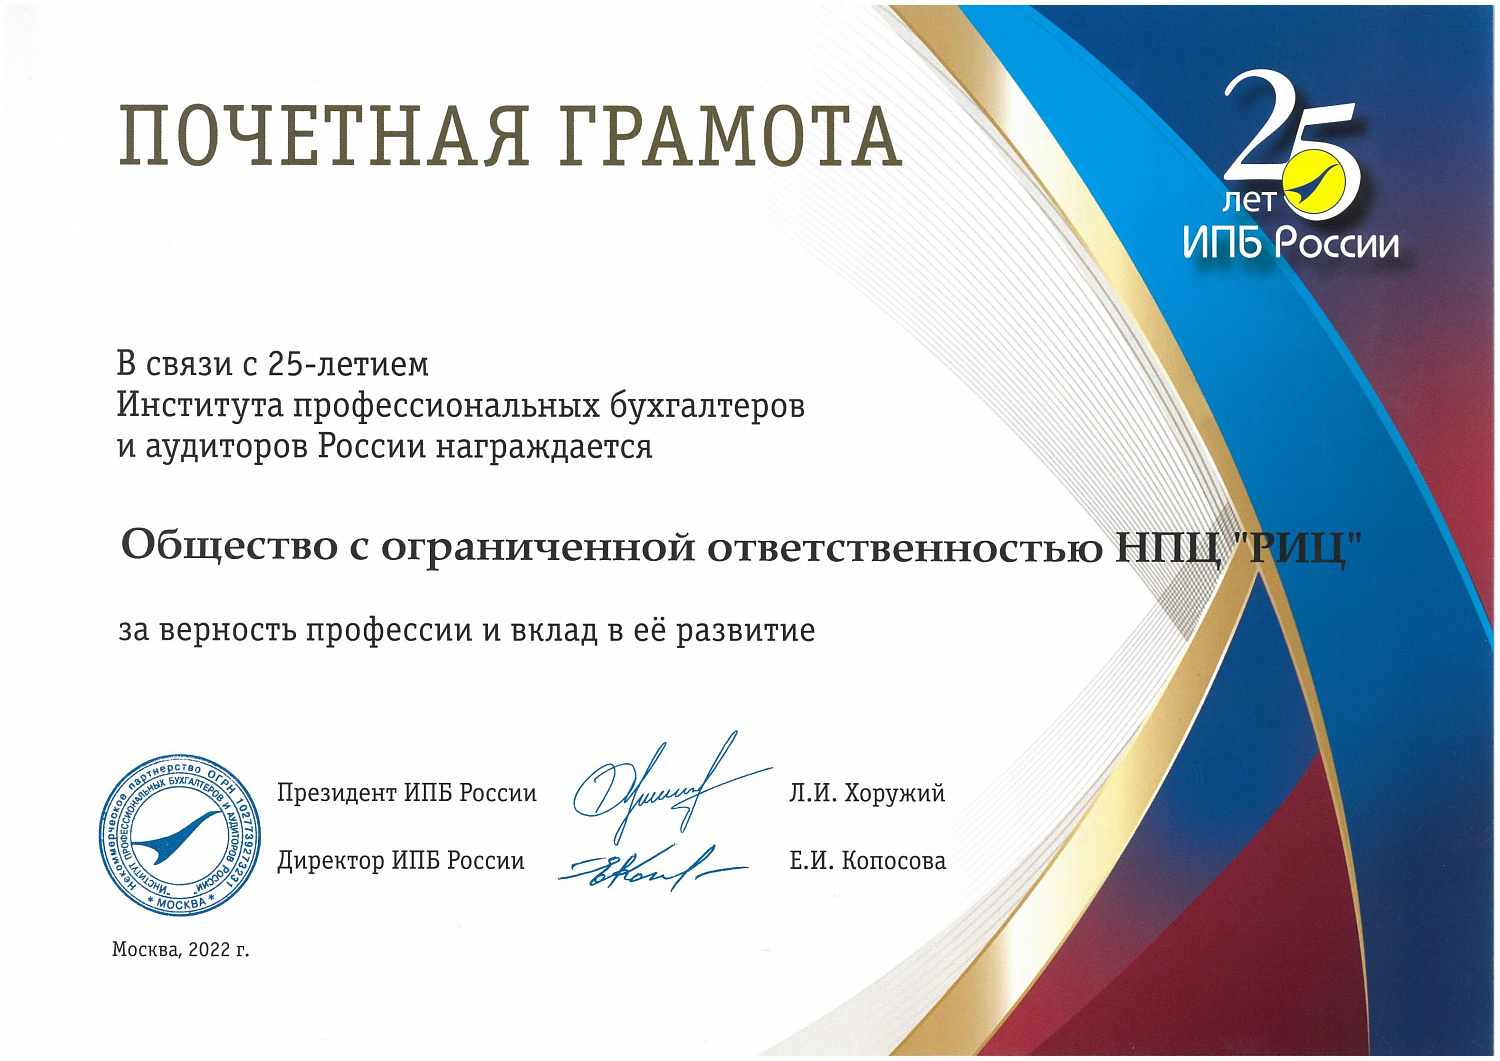 Компания "РИЦ" удостоена почетной грамотой ИПБ России